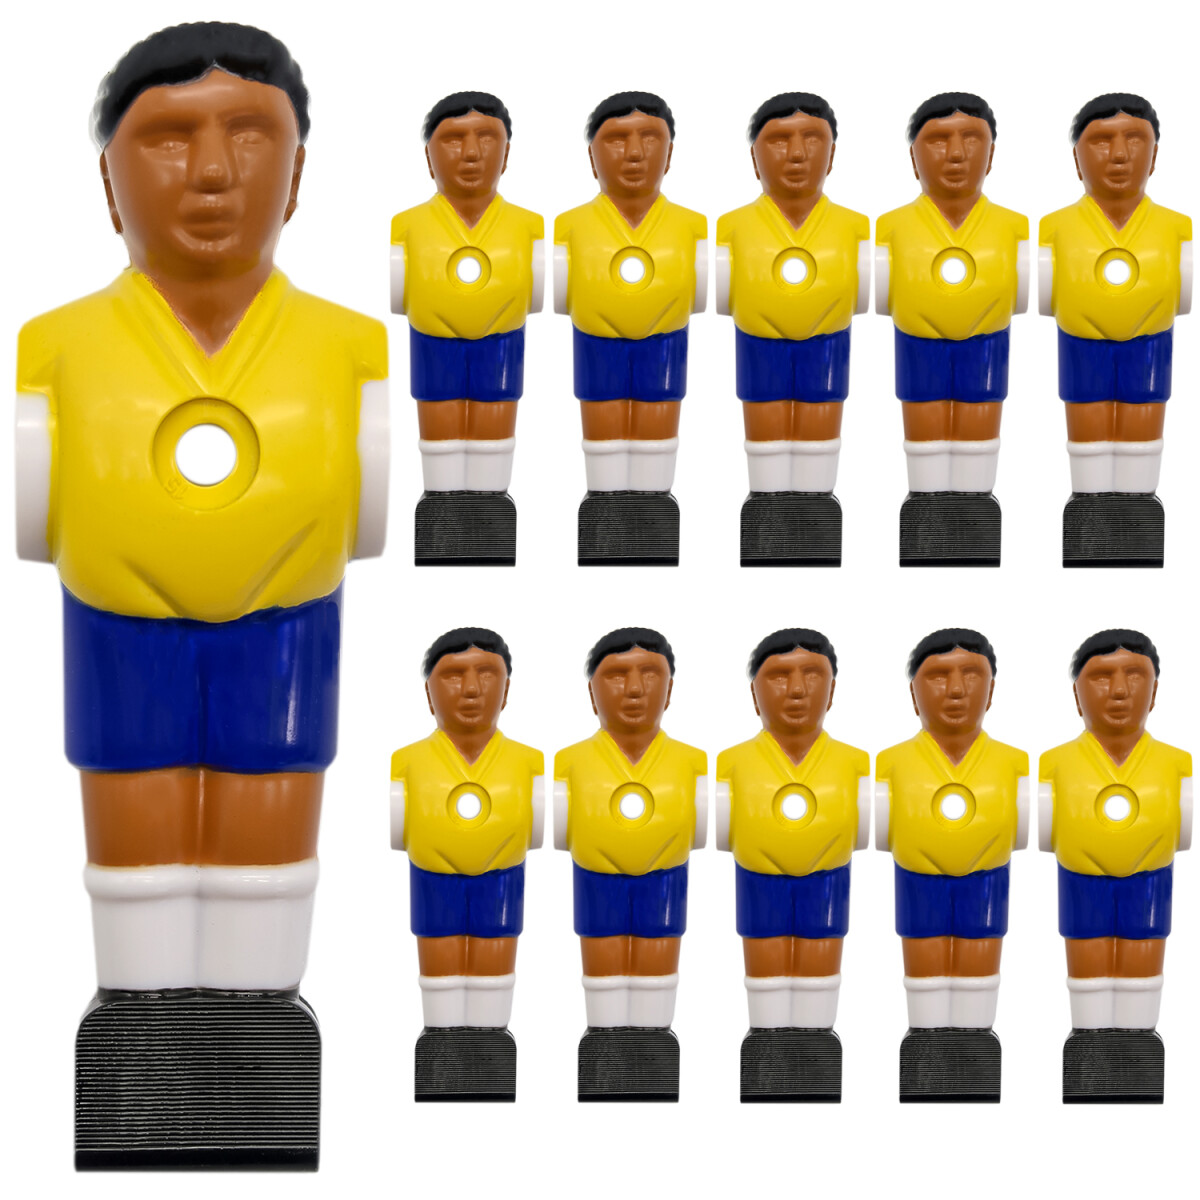 11 Tischkicker Figuren 16mm Brasilien Gelb Blau - Tisch...